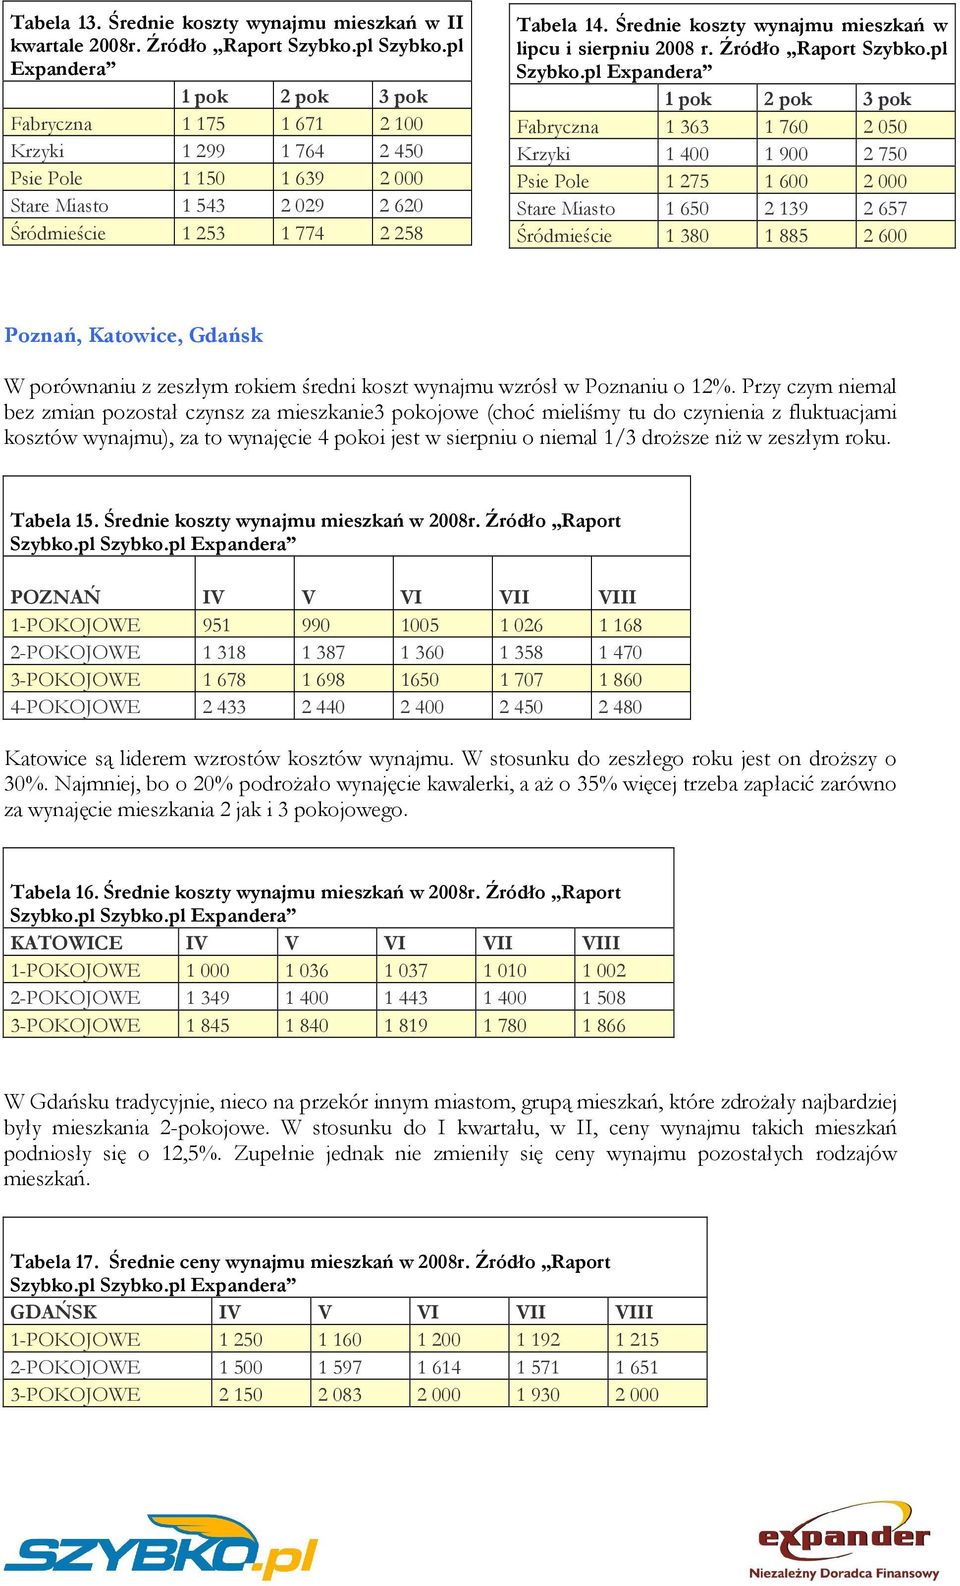 Średnie koszty wynajmu mieszkań w lipcu i sierpniu 2008 r. Źródło Raport Szybko.pl Szybko.